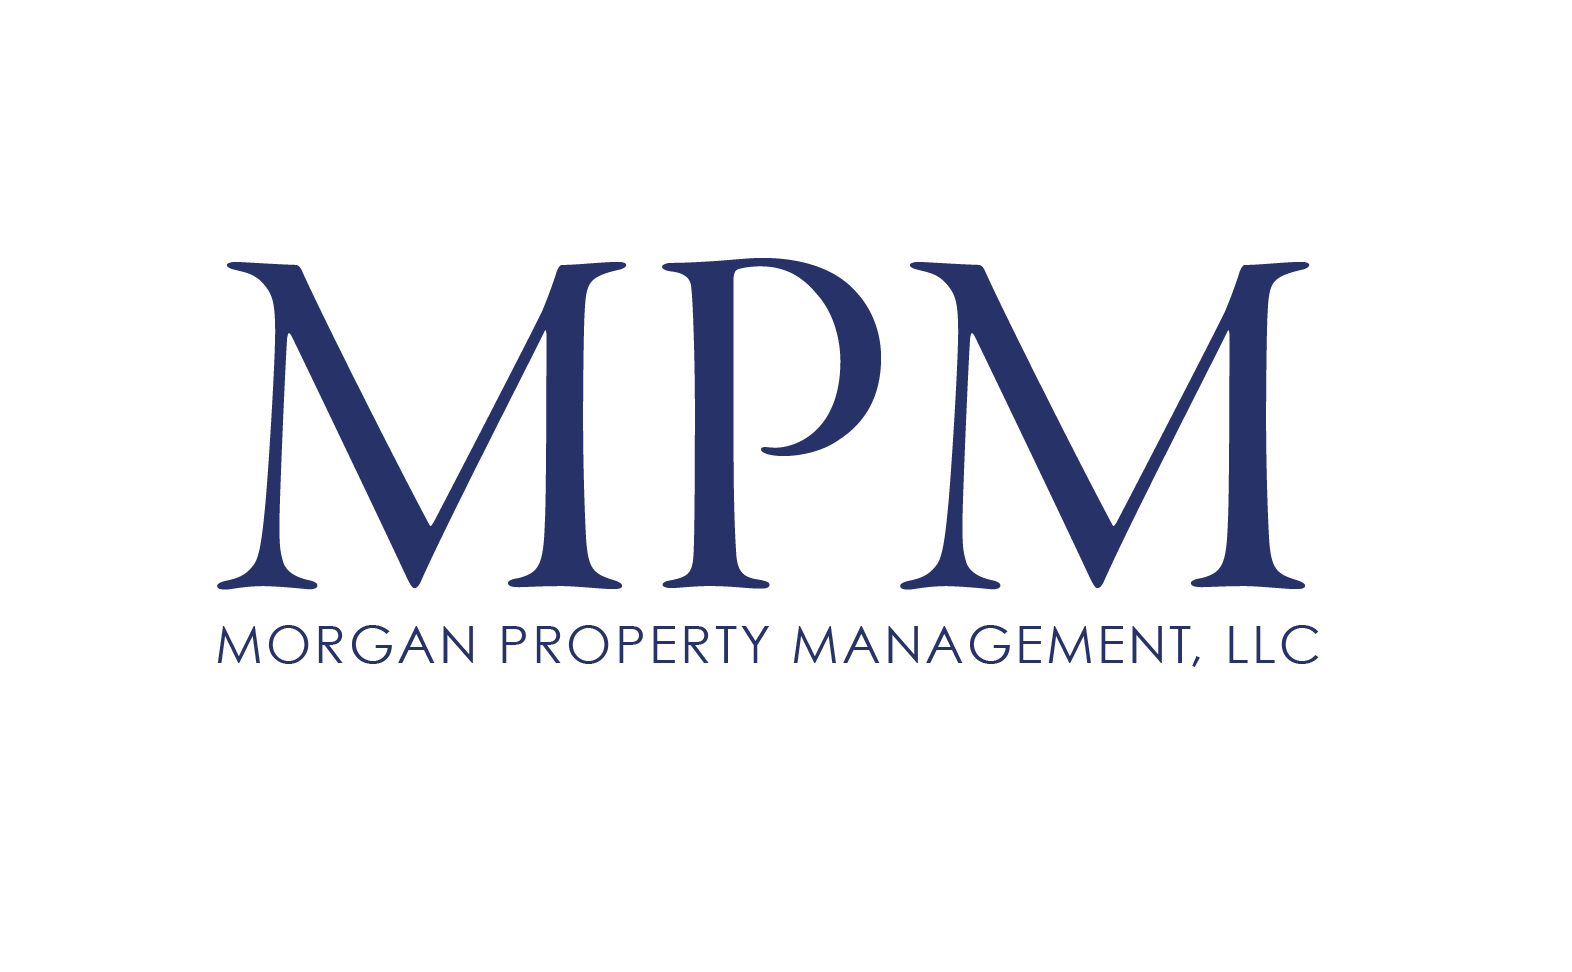 MORGAN PROPERTY MANAGEMENT LLC